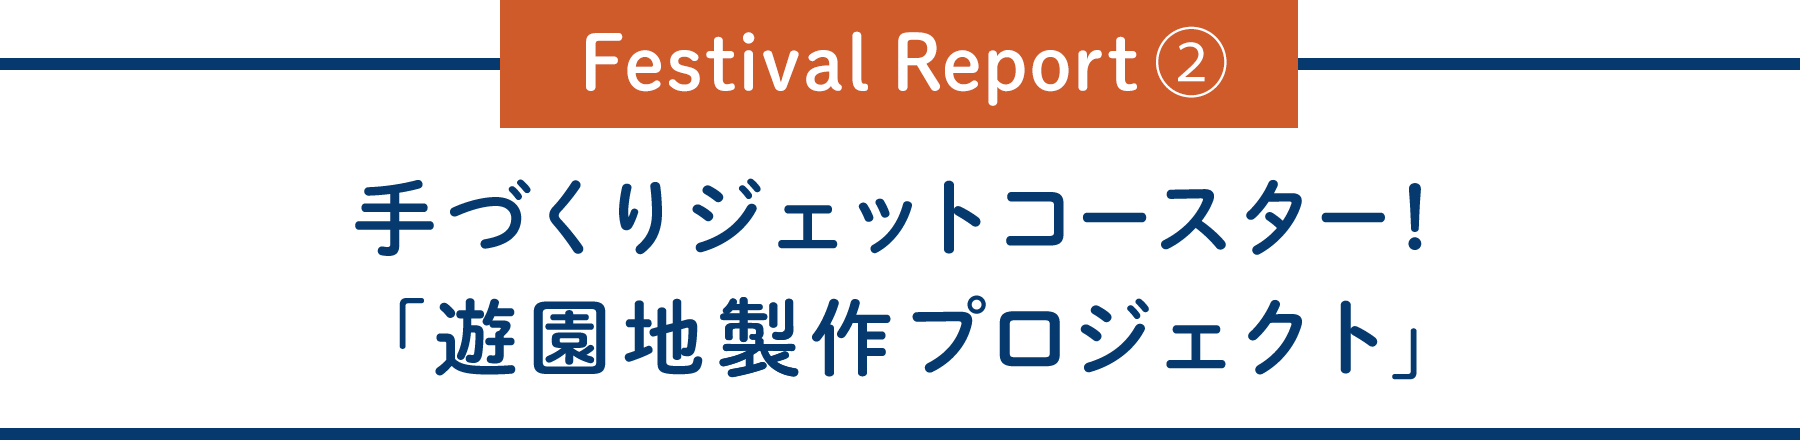 Festival Report②手づくりジェットコースター！「遊園地製作プロジェクト」